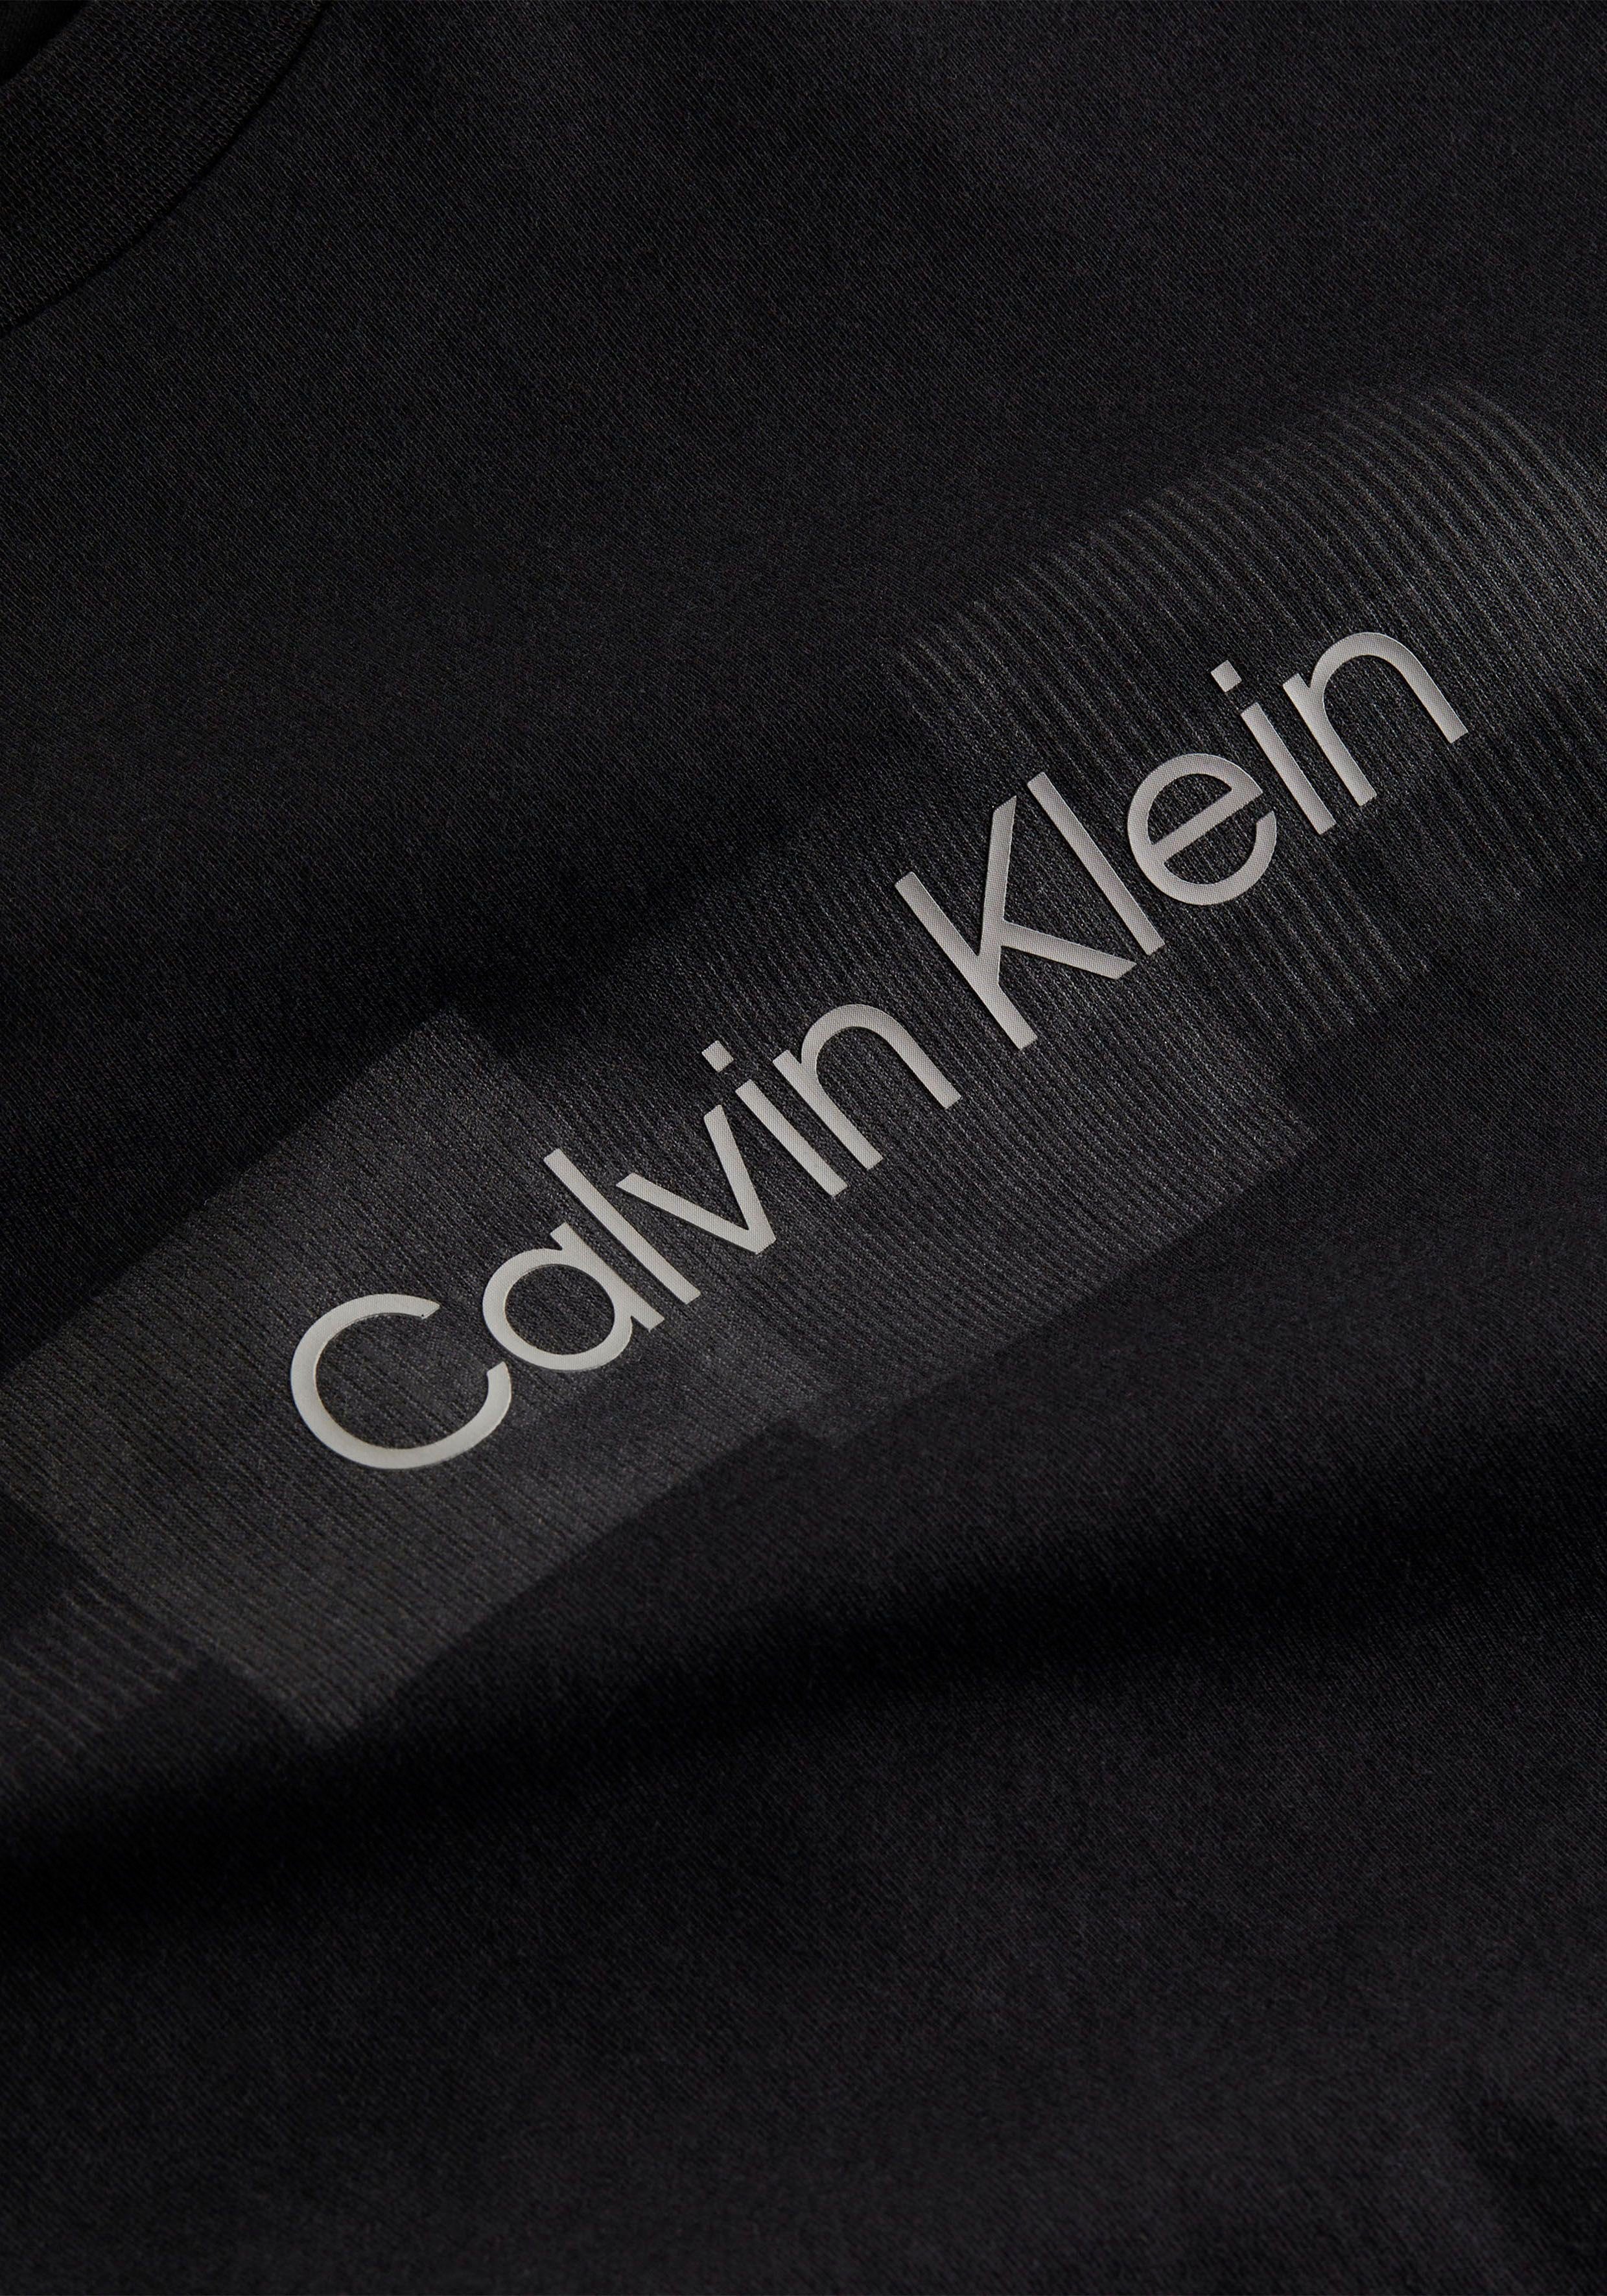 Calvin Klein T-Shirt BOX reiner Baumwolle Black STRIPED Ck T-SHIRT aus LOGO